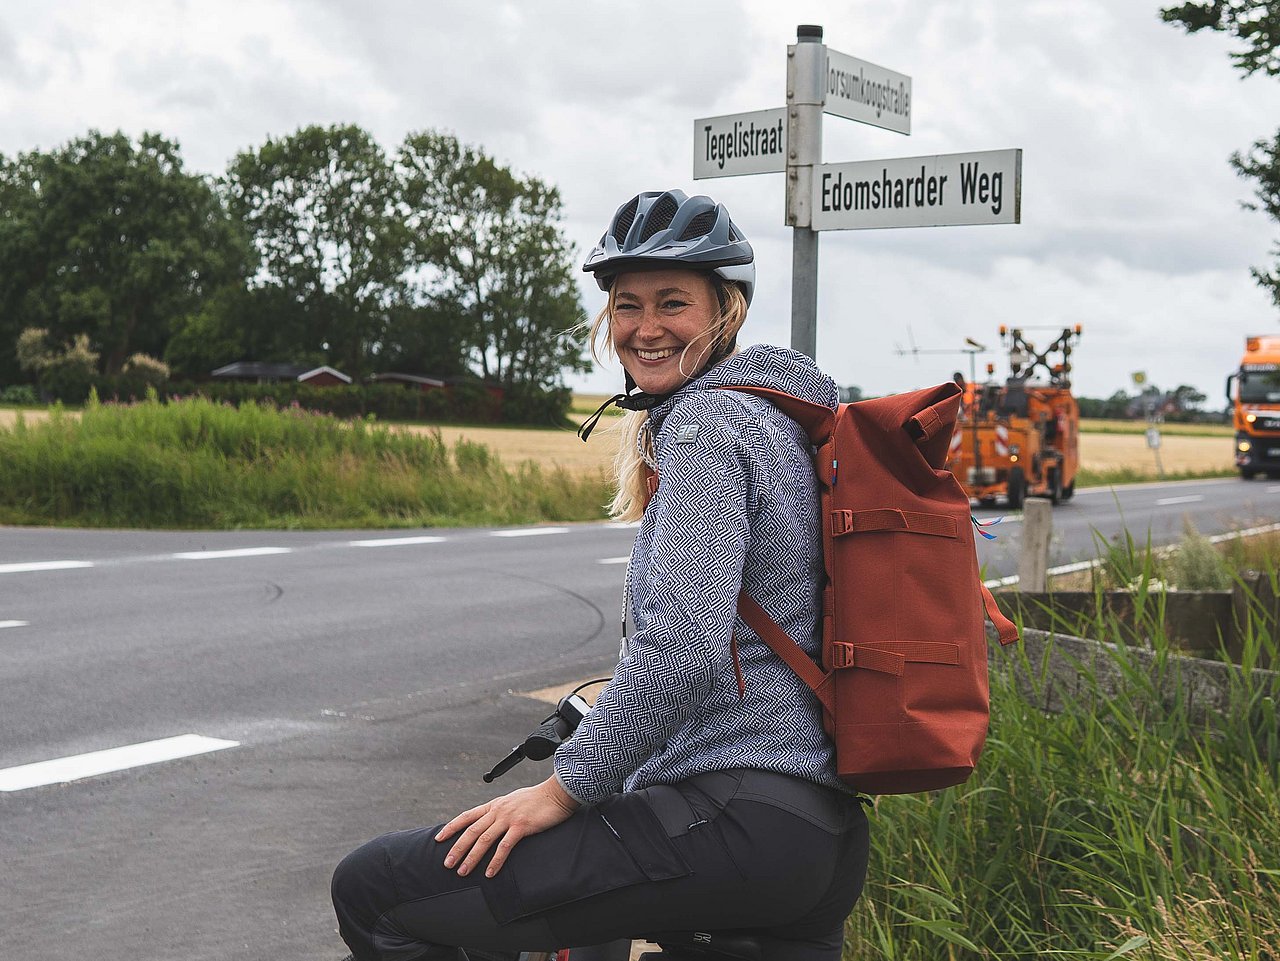 Eine Radfahrerin blickt nach hinten und lächelt. Im Hintergrund sind eine Kreuzung und diverse Straßennamen auf Schildern zu erkennen.